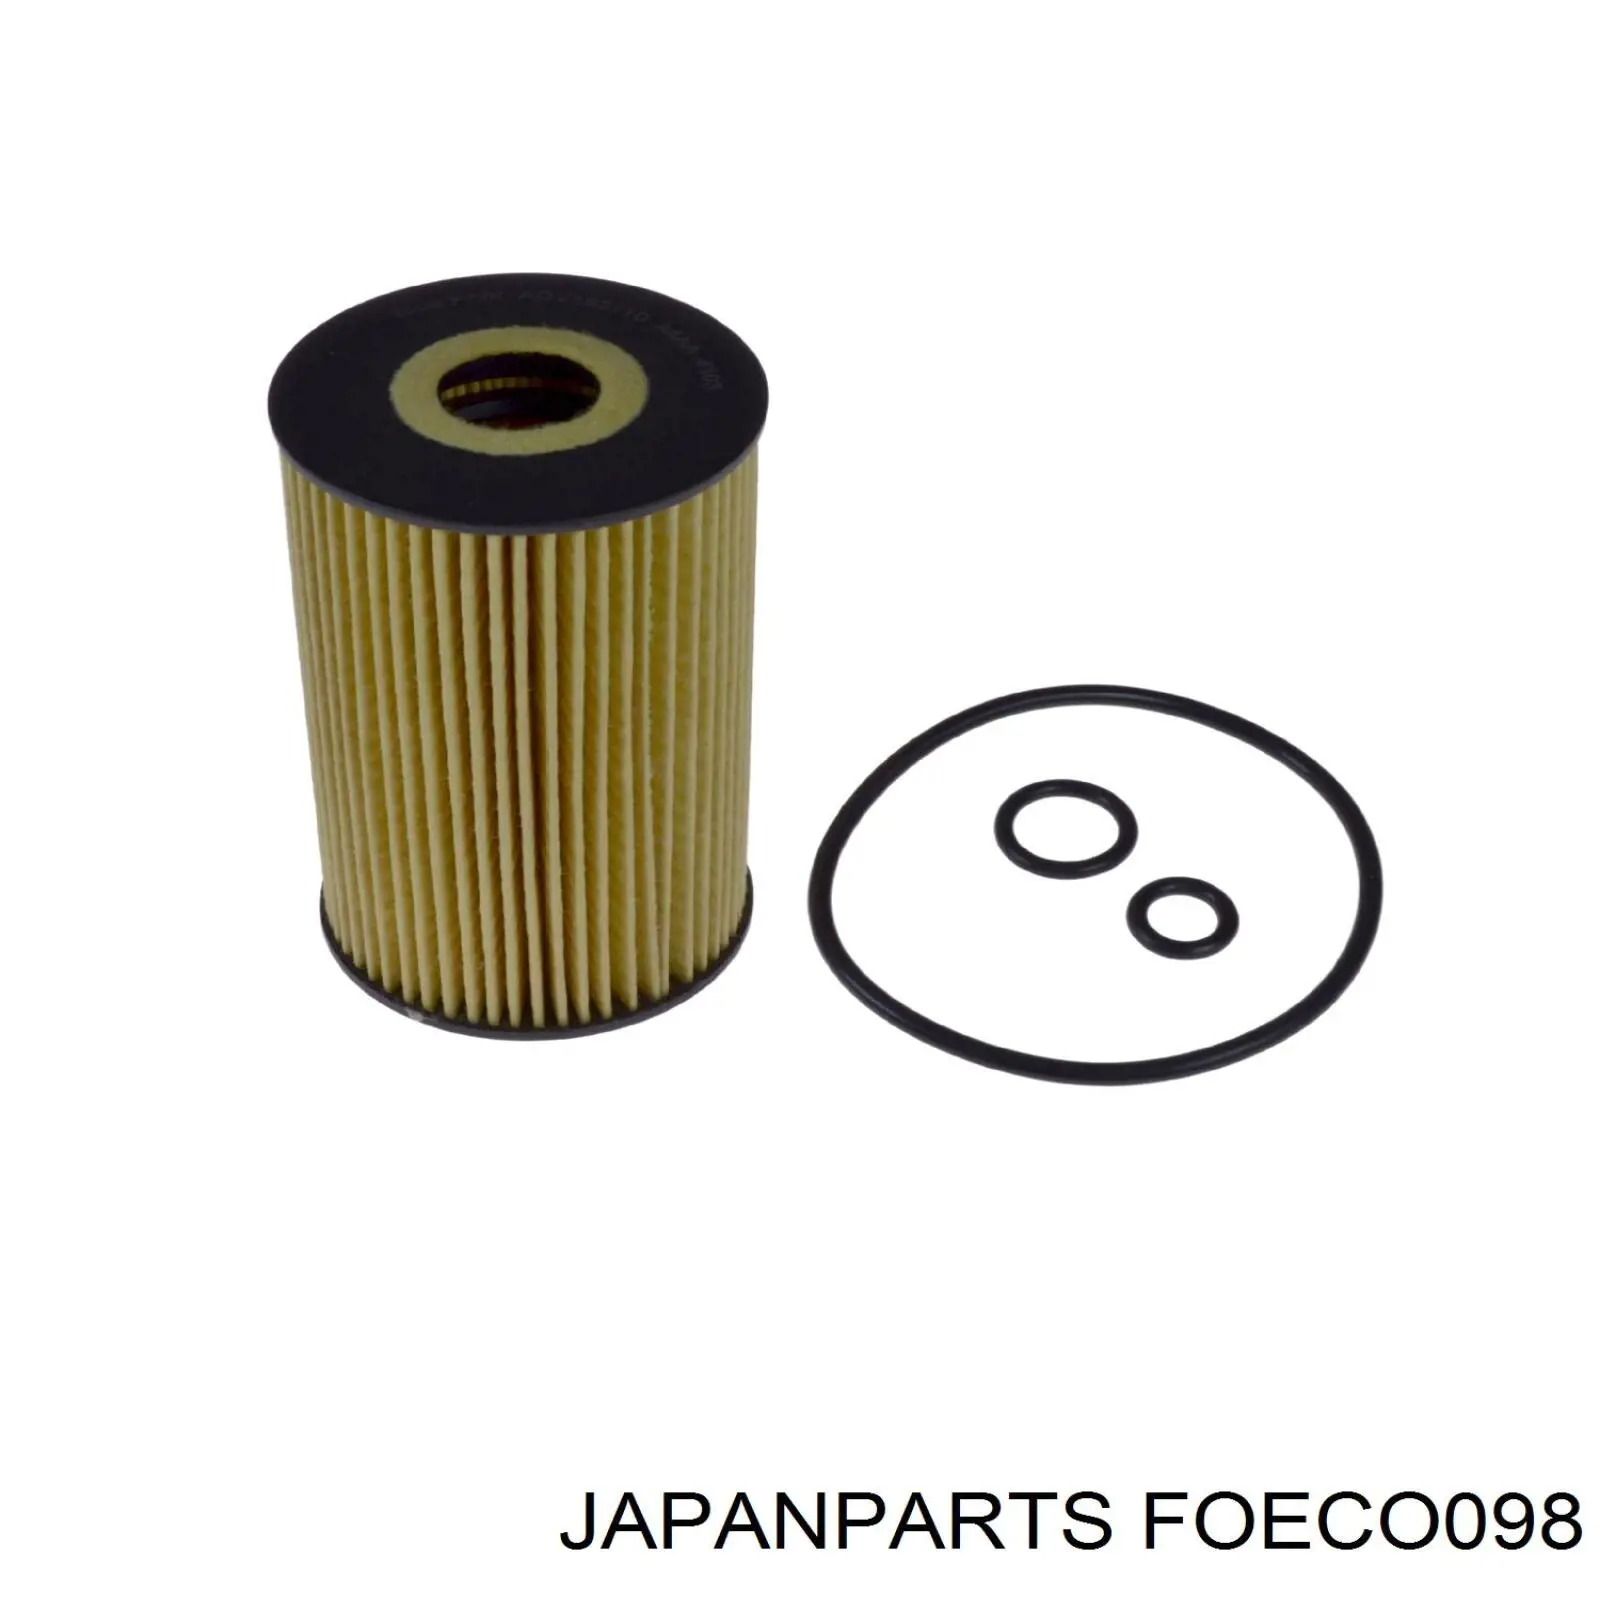 FOECO098 Japan Parts filtro de aceite